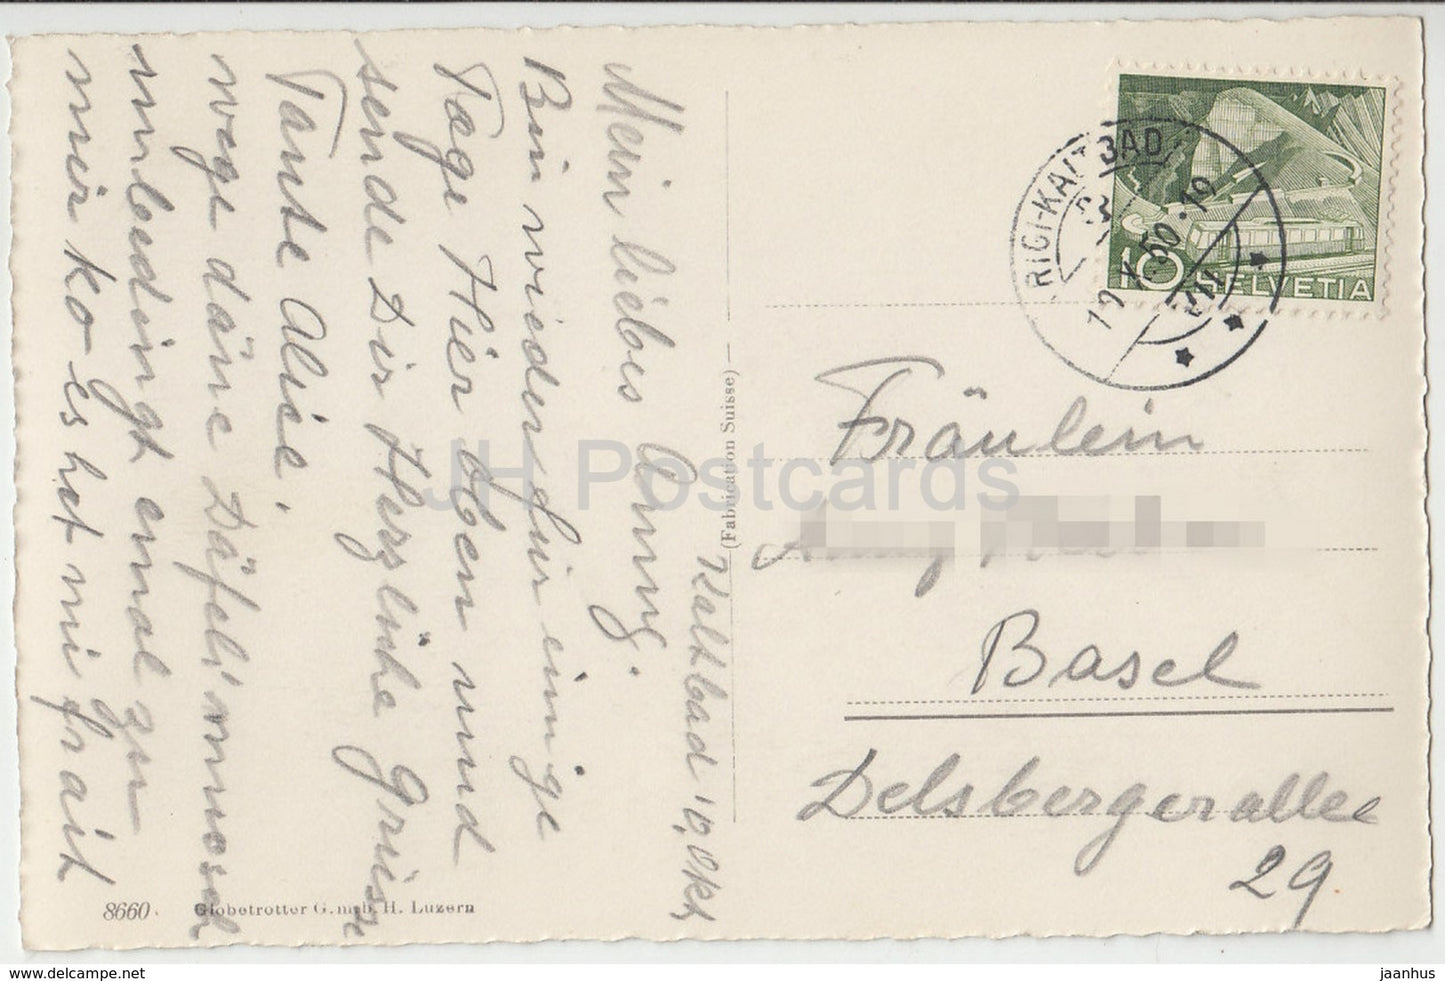 Rigi - Blick auf Zugersee u. Zug - 8660 - Switzerland - 1950 - used